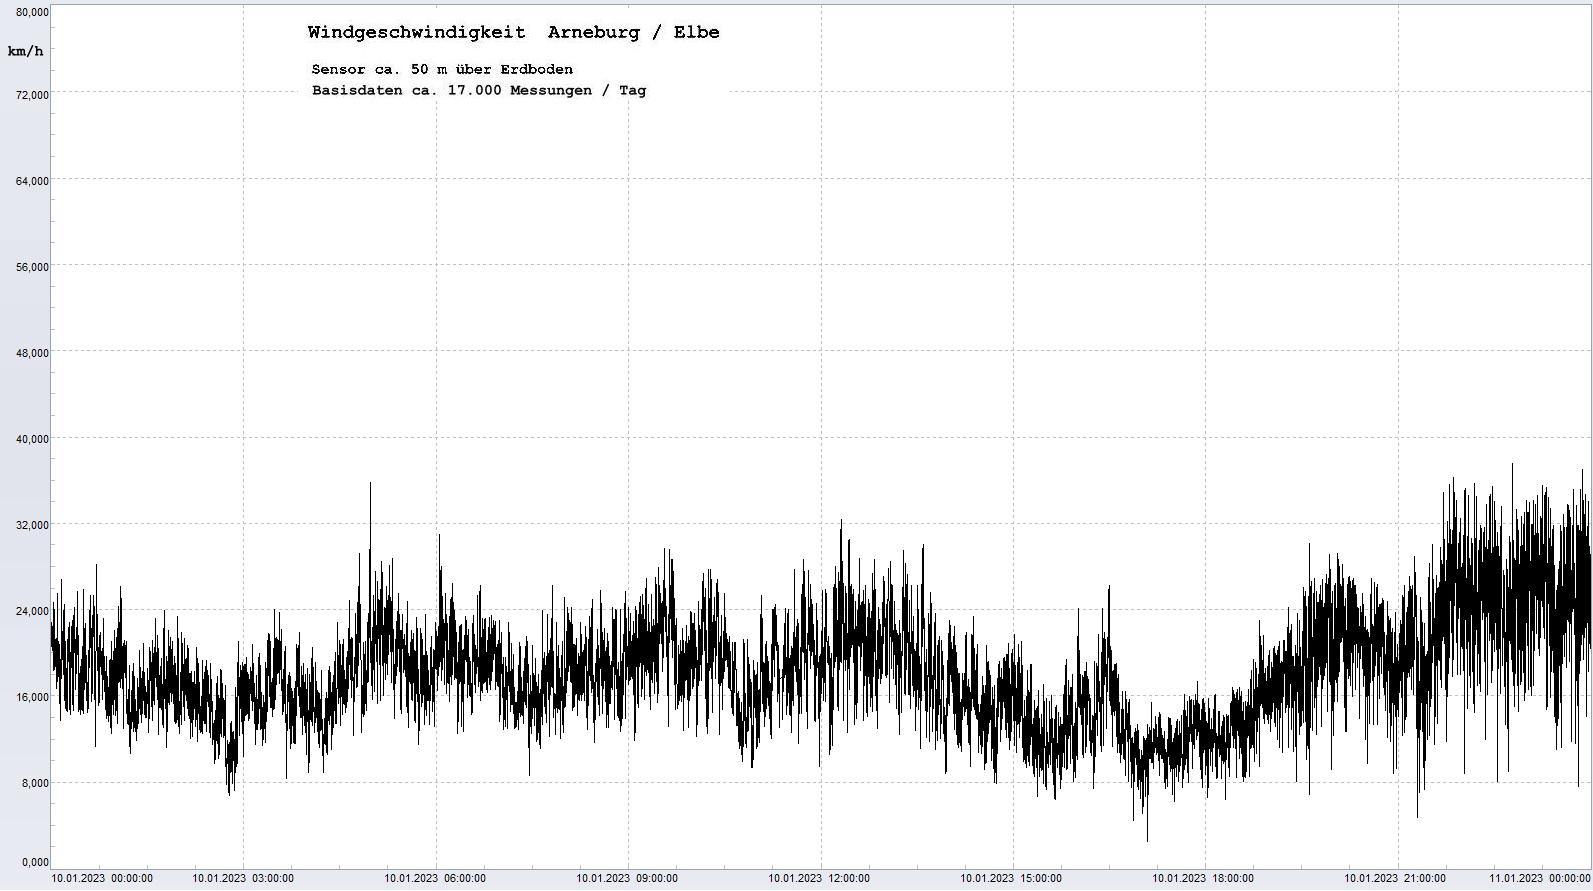 Arneburg Tages-Diagramm Winddaten, 10.01.2023
  Diagramm, Sensor auf Gebude, ca. 50 m ber Erdboden, Basis: 5s-Aufzeichnung